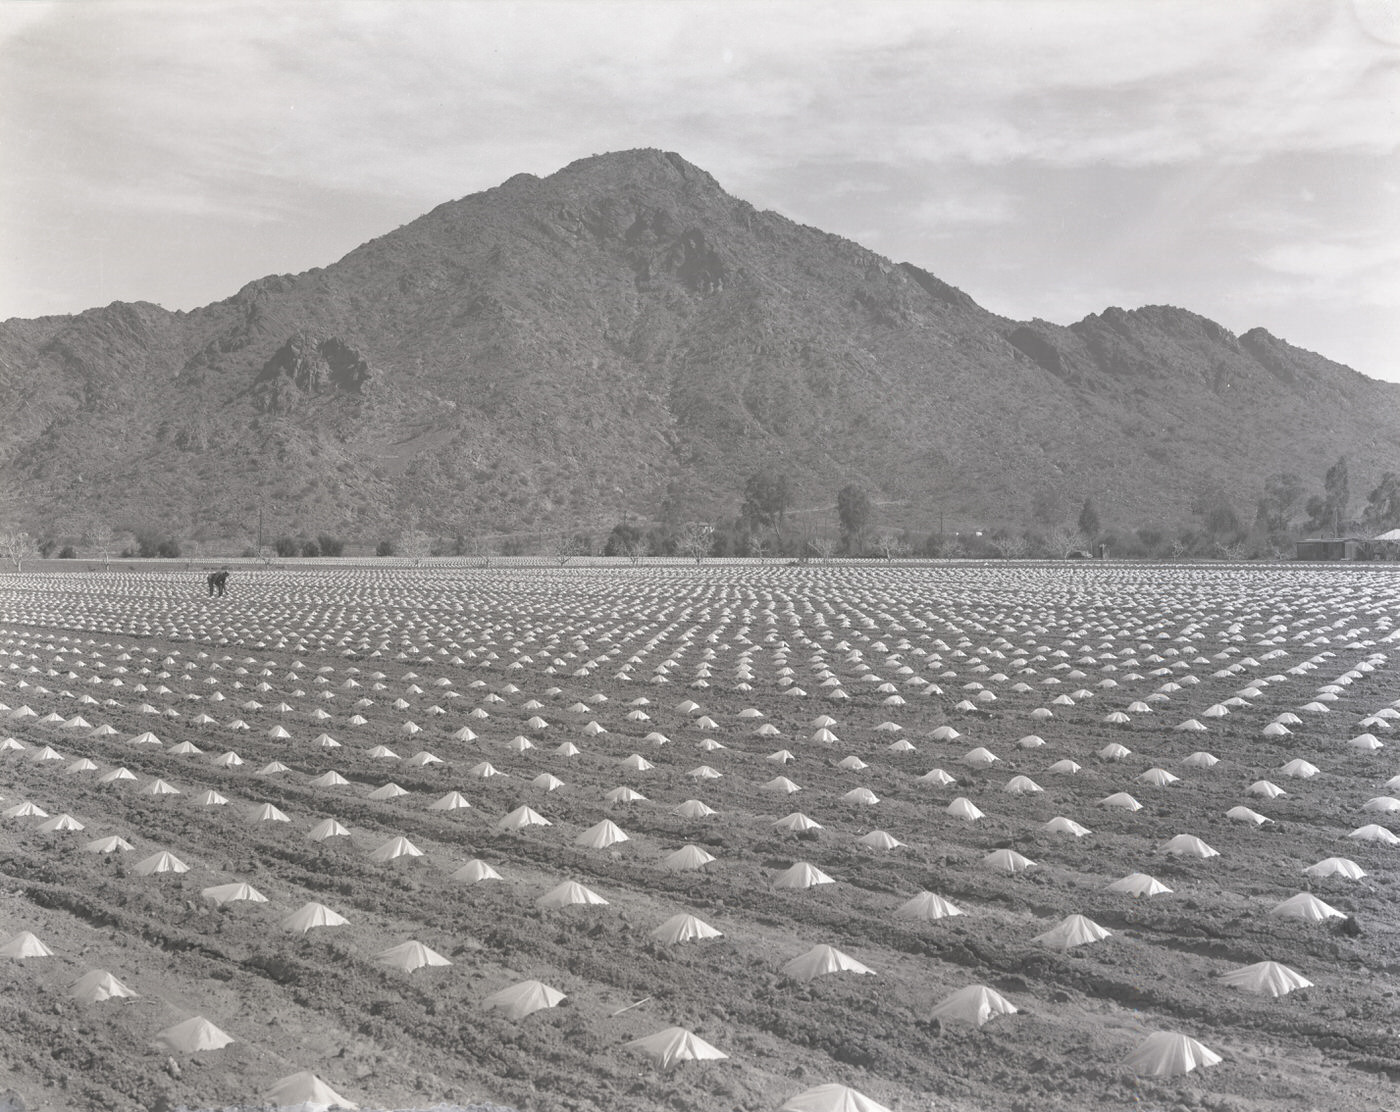 Tomato Field, 1930s